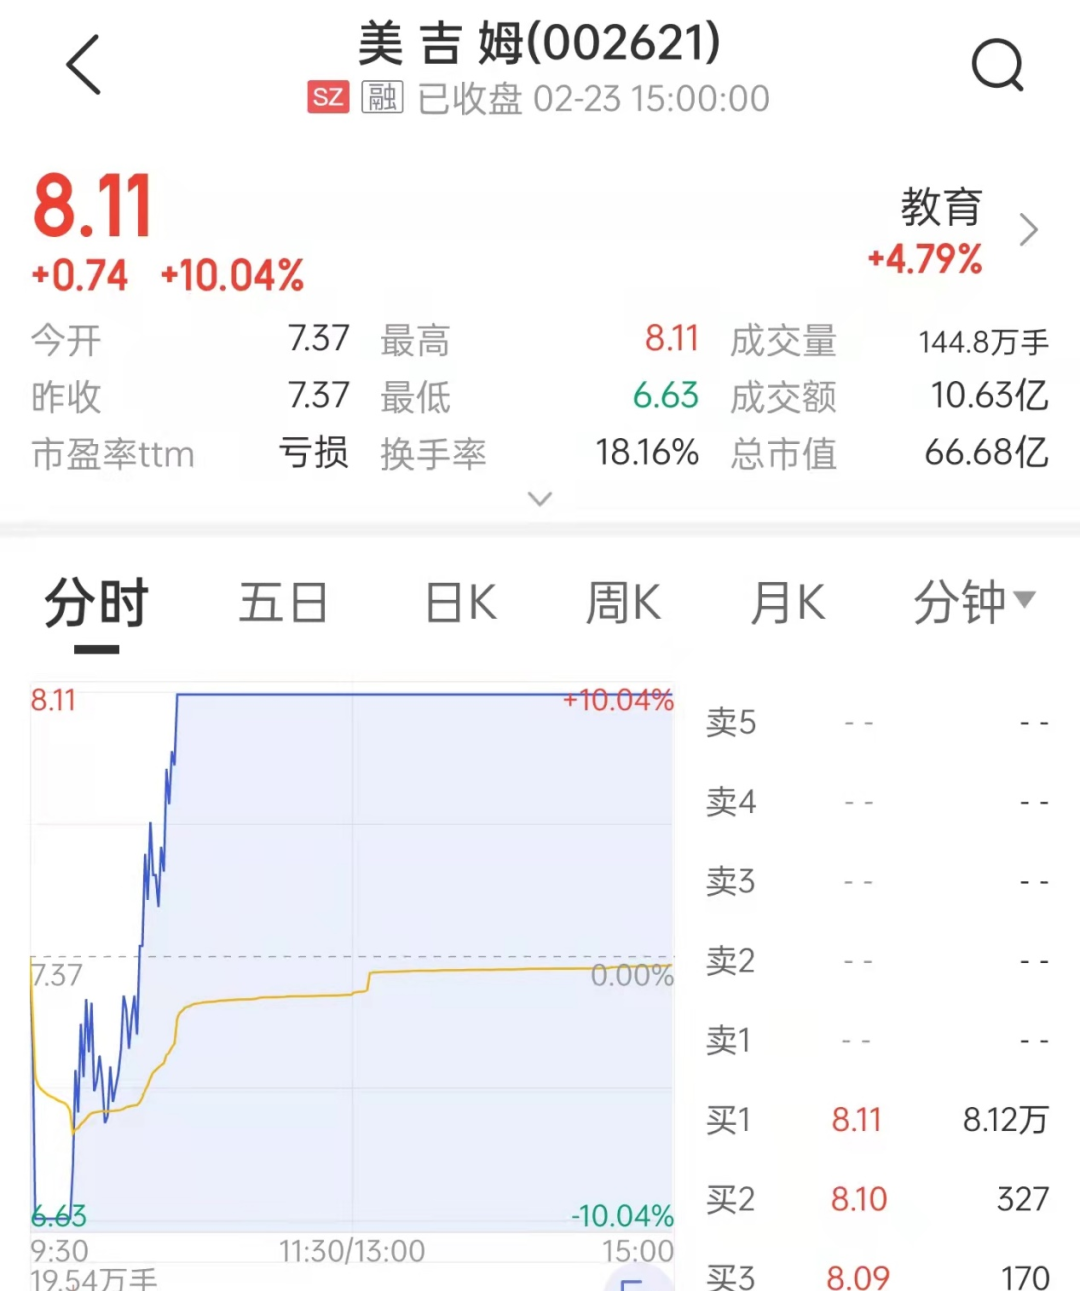 疑似游资章盟主常用席位国泰君安证券上海江苏路证券营业部净买入2212.82万元